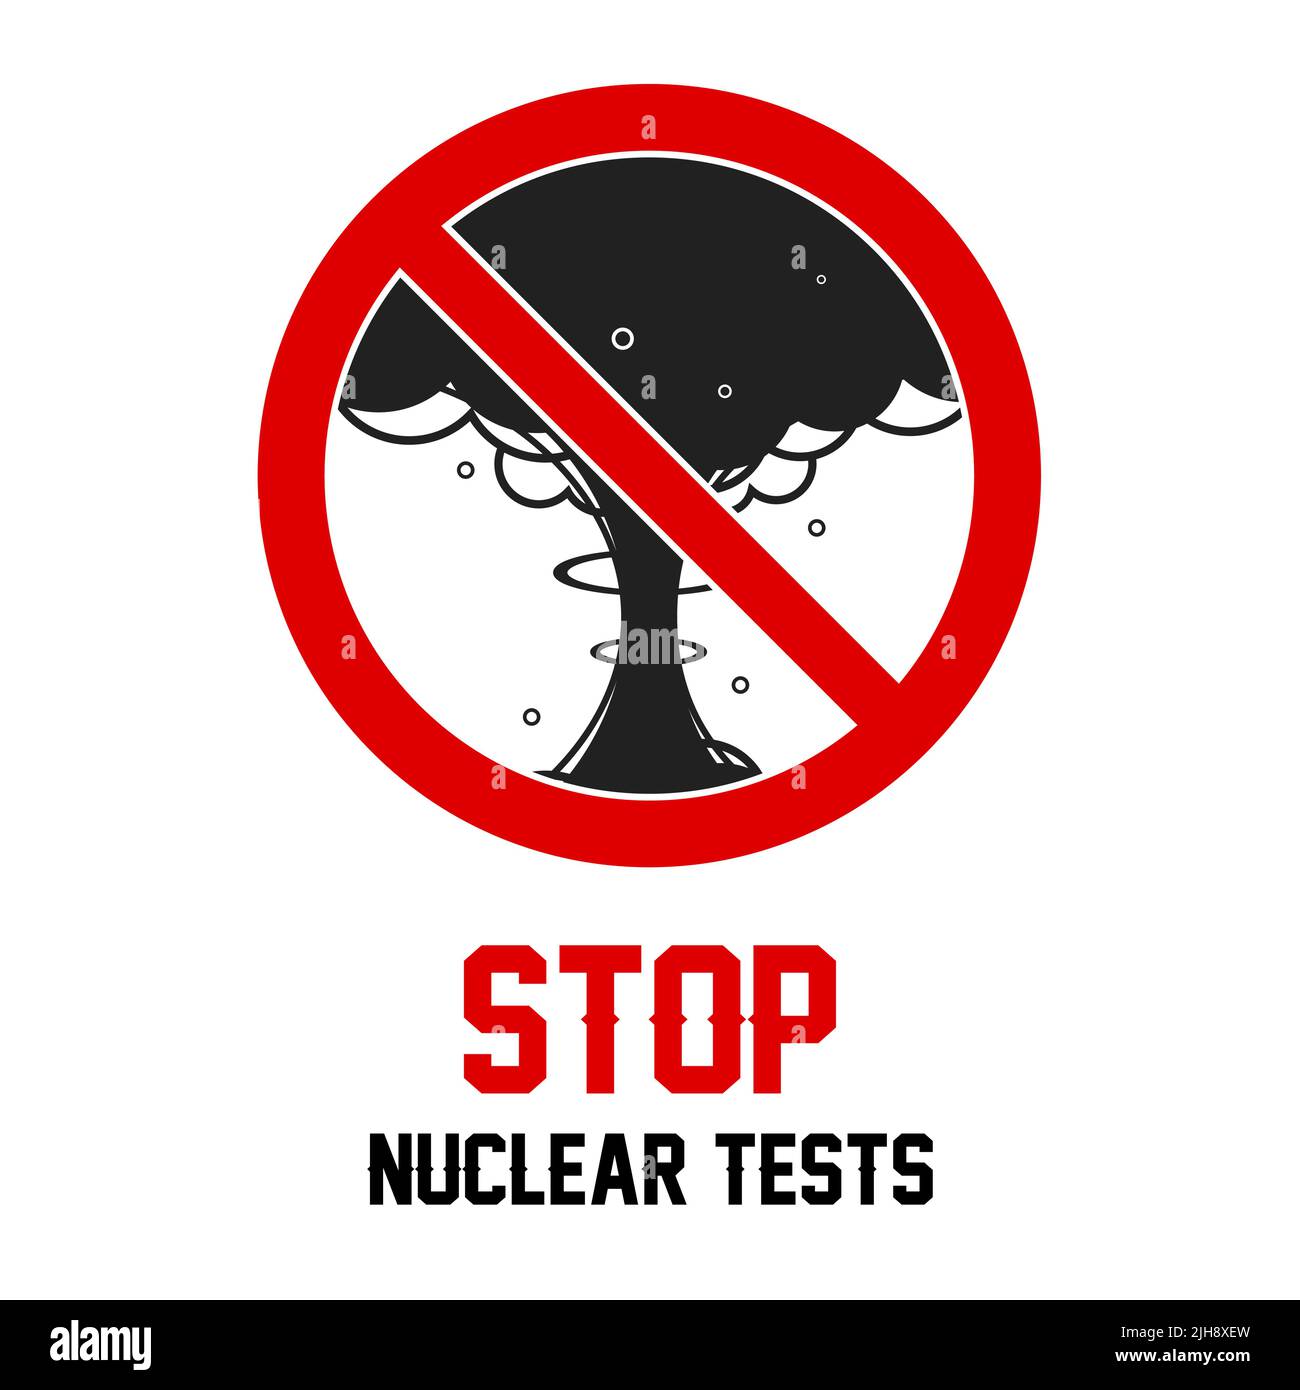 Stoppen Sie die Atomtests. Roter umgekehrter Schrägstrich umkreist kein Zeichen. Anti-Kriegs-Poster oder Banner-Vorlage. Flache Vektorgrafik isoliert auf weißem Hintergrund. Stock Vektor